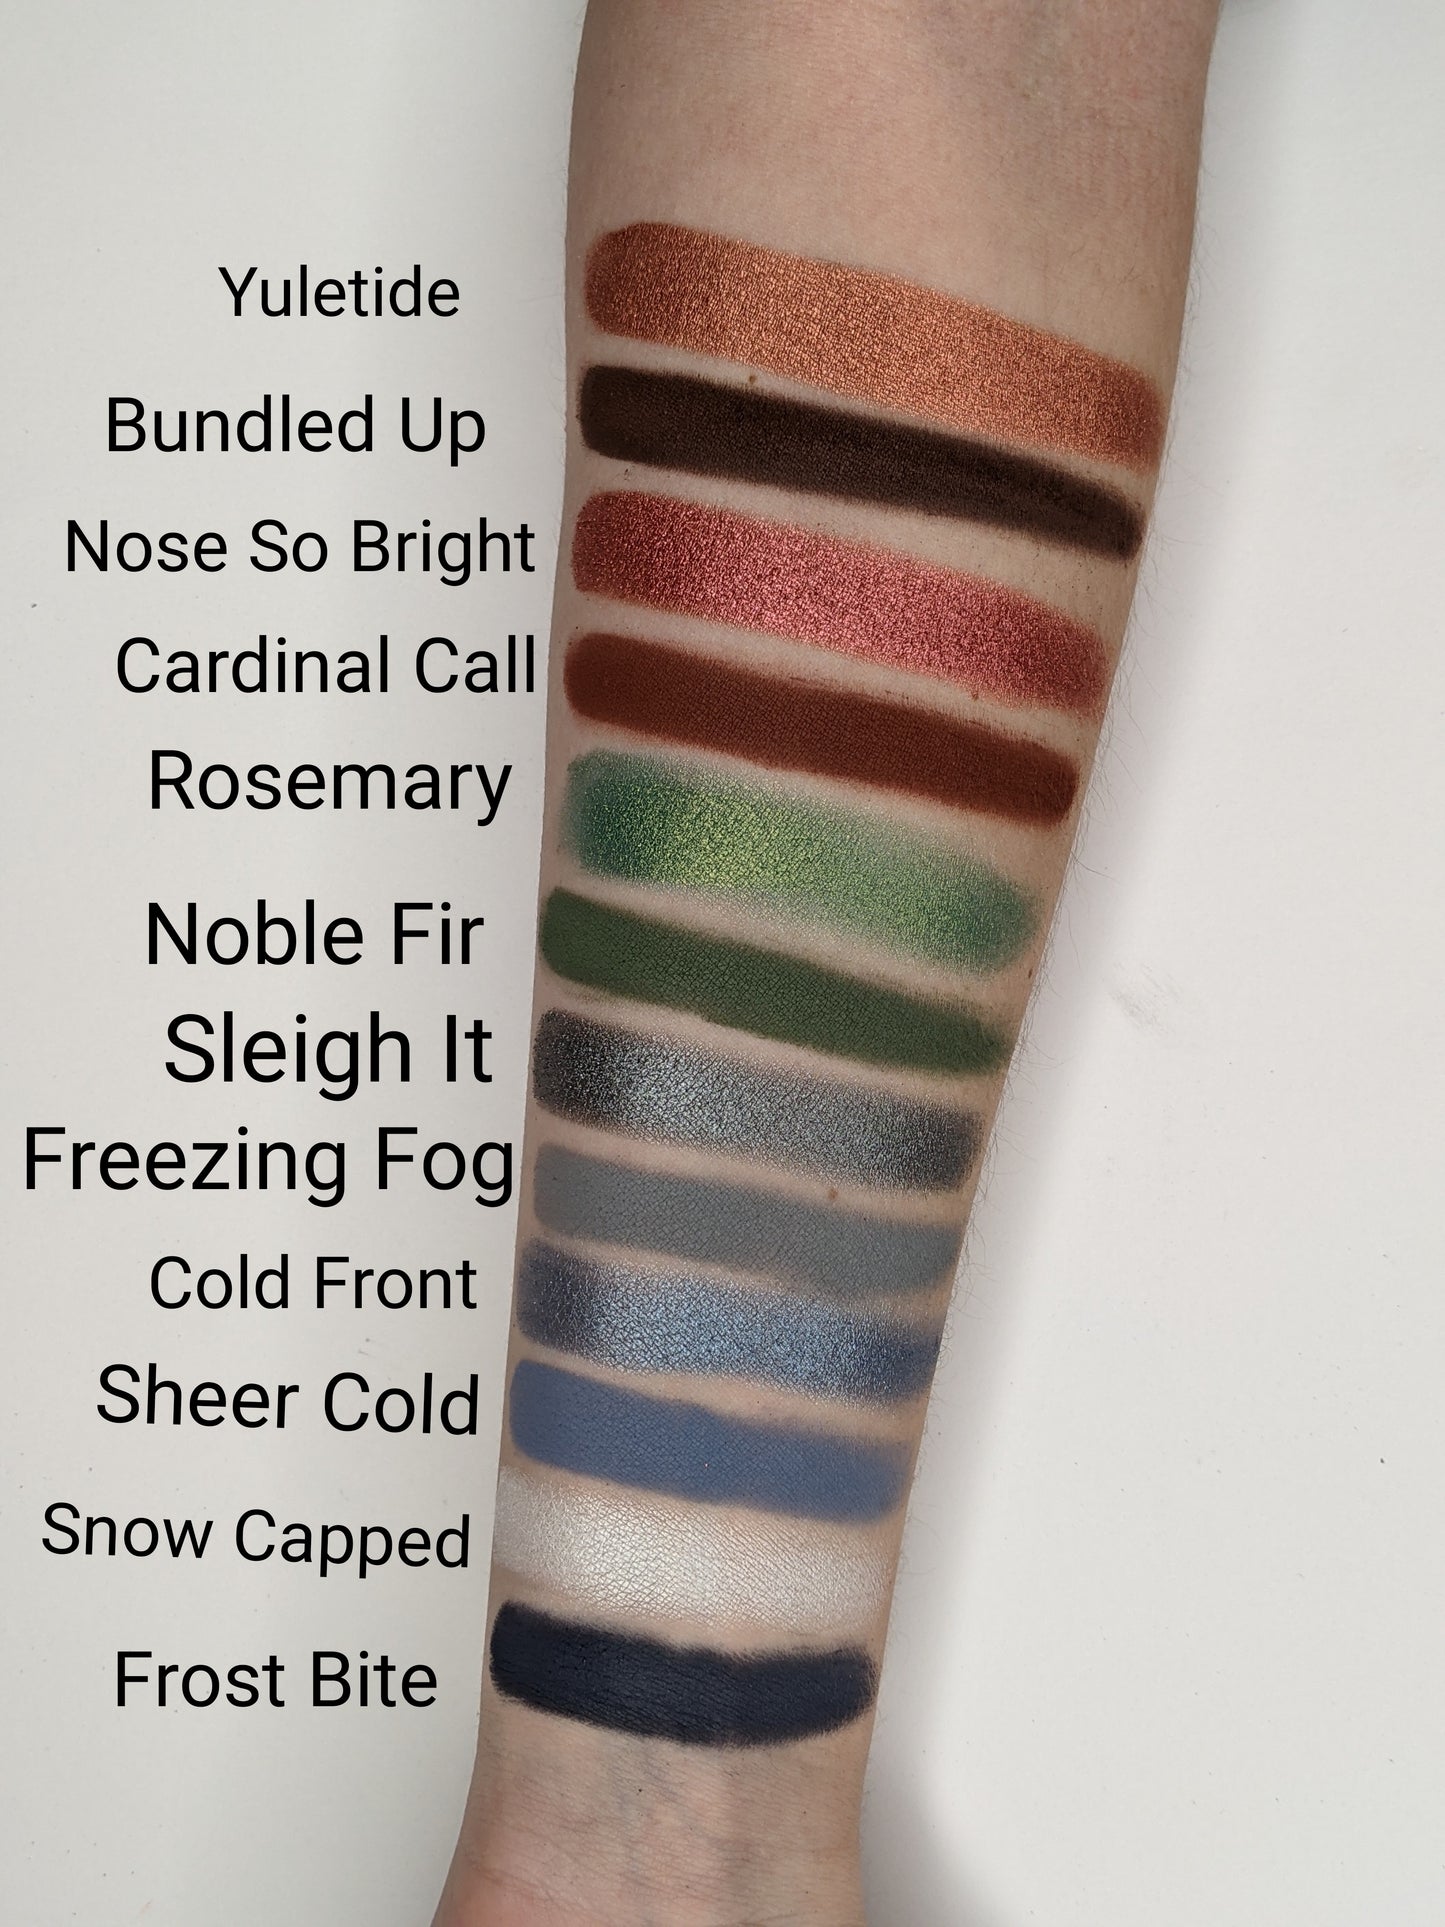 Freezing Fog - Eyeshadow Matte Blue Grey